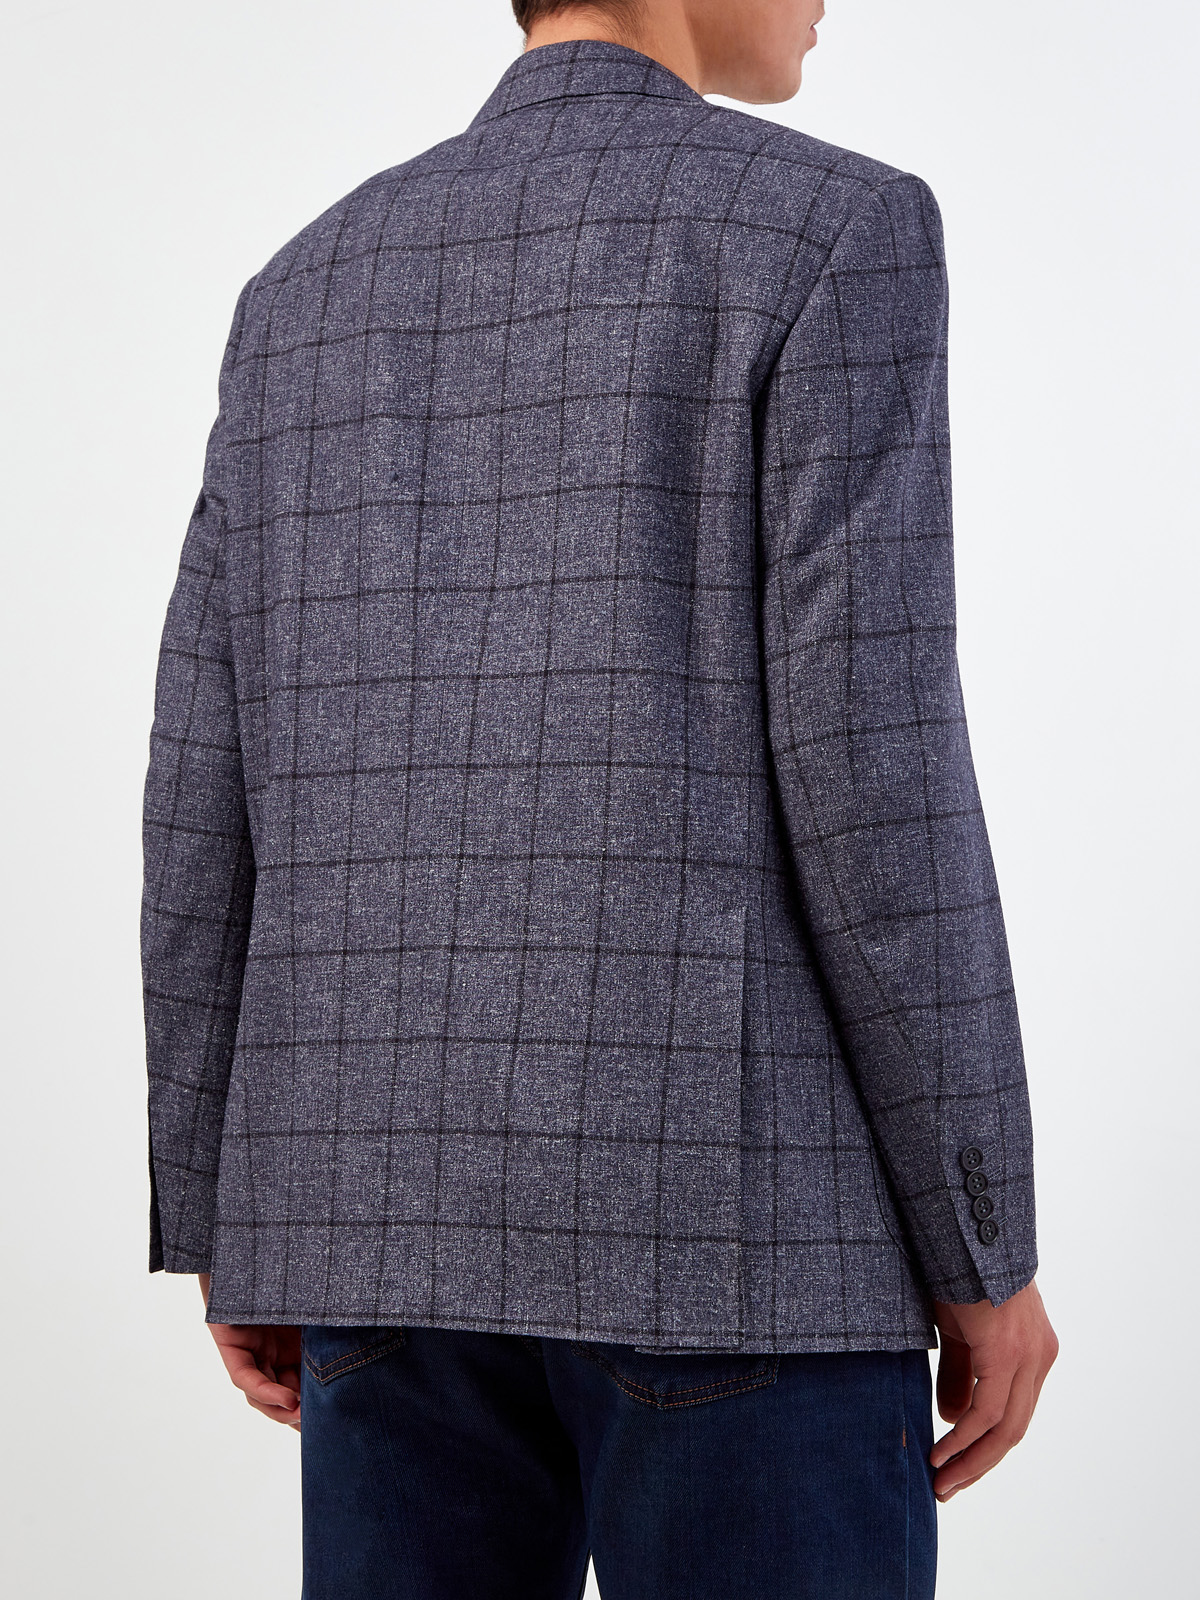 Пиджак из шерсти, шелка и кашемира с узором в клетку CANALI, цвет серый, размер 52;54;56 - фото 4